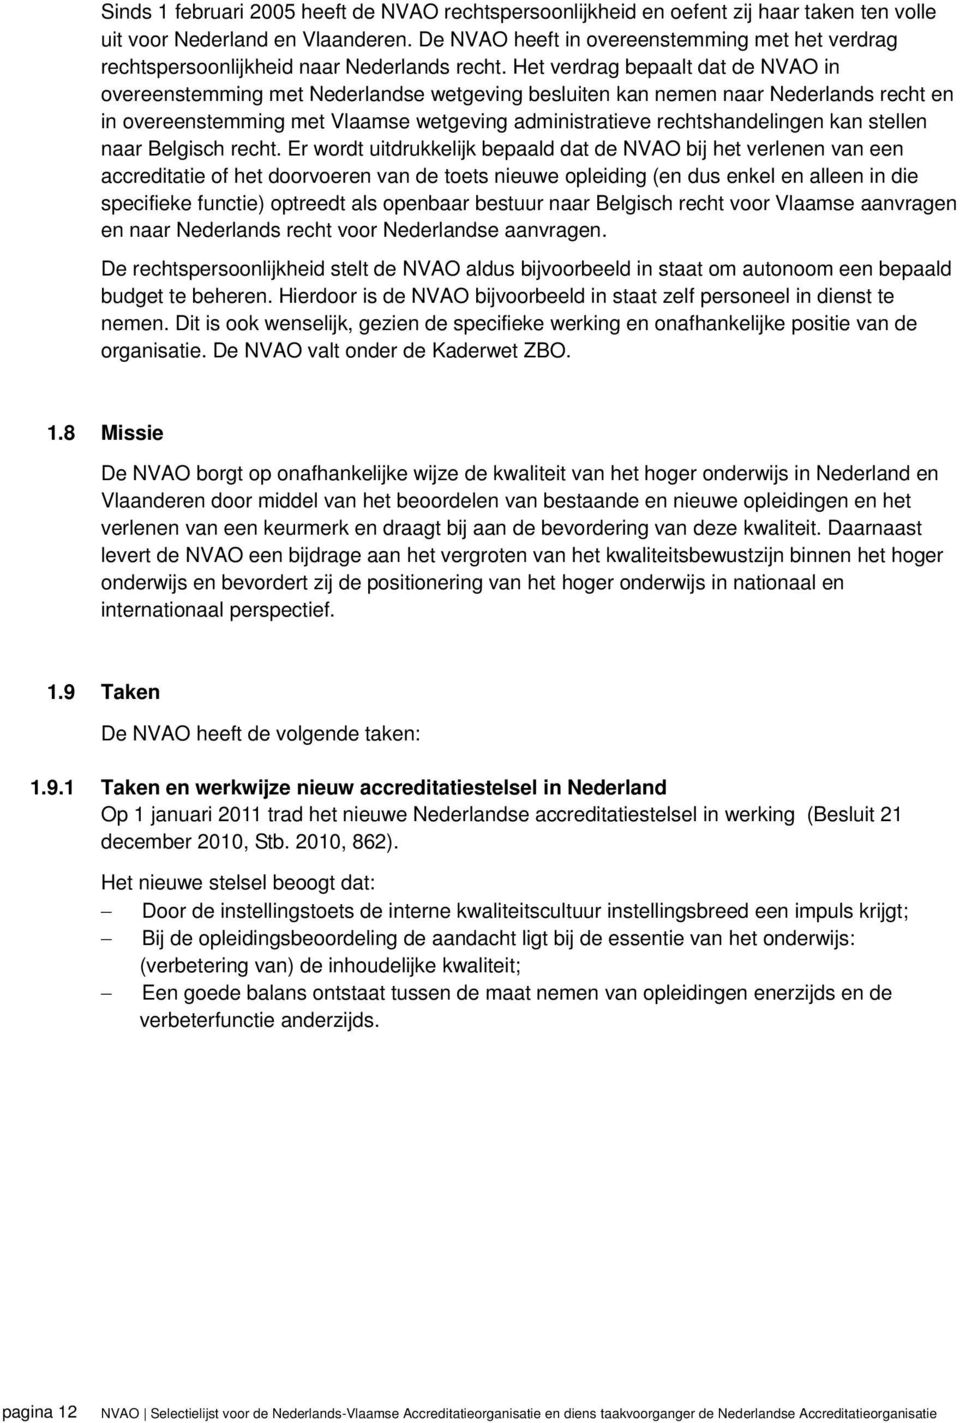 Het verdrag bepaalt dat de NVAO in overeenstemming met Nederlandse wetgeving besluiten kan nemen naar Nederlands recht en in overeenstemming met Vlaamse wetgeving administratieve rechtshandelingen